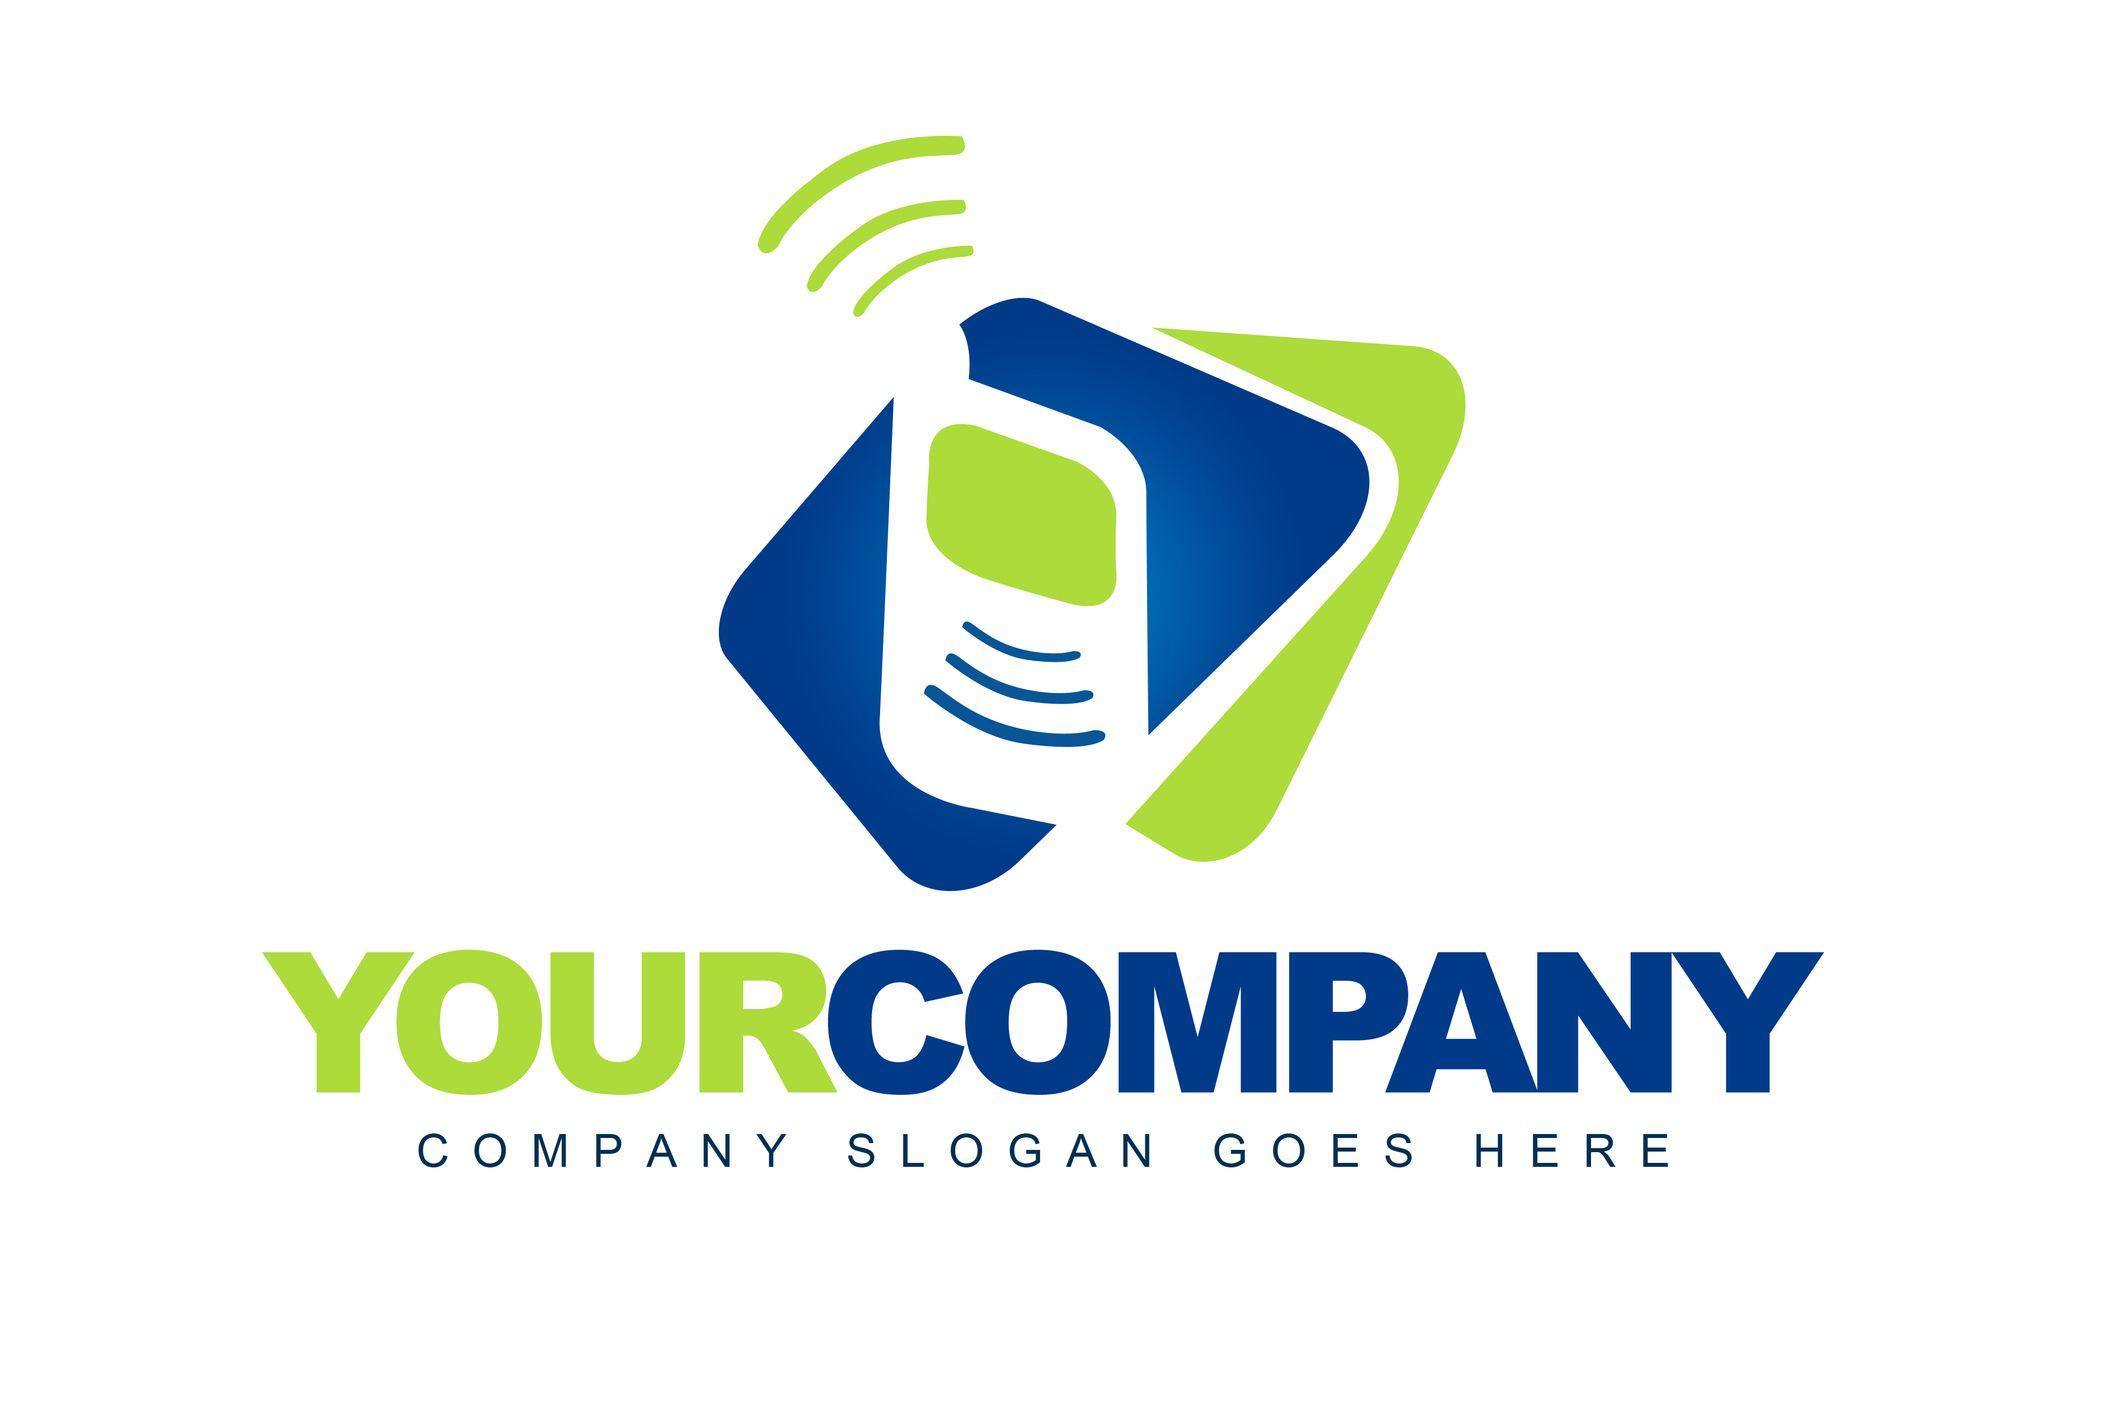 Telecom Company Logo - 5 Ways to Modernize Your Telecom Logo Design • Online Logo Maker's Blog